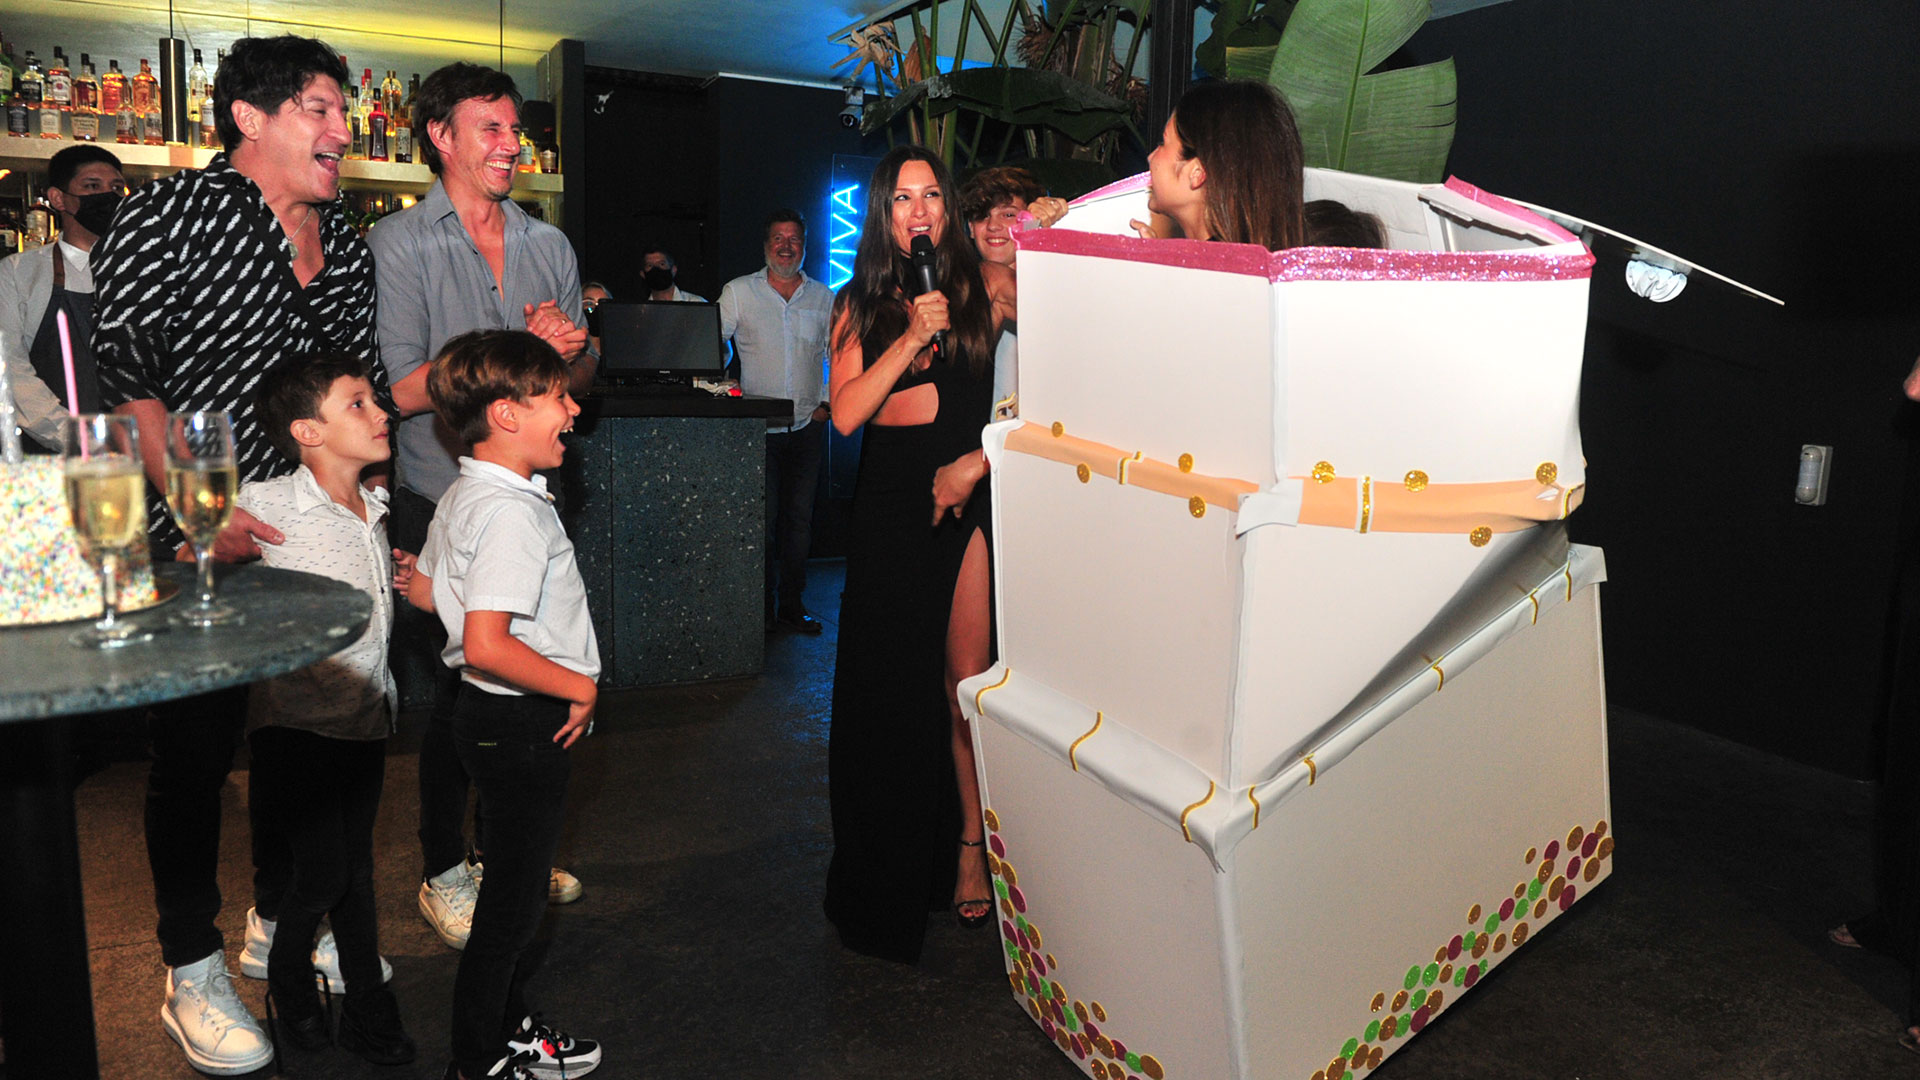 Pasadas las 12 de la noche comenzó el cumpleaños de Roberto García Moritán y recibió una sorpresa: sus hijos Delfina y Santino salieron de adentro de una enorme caja como si fuera una torta